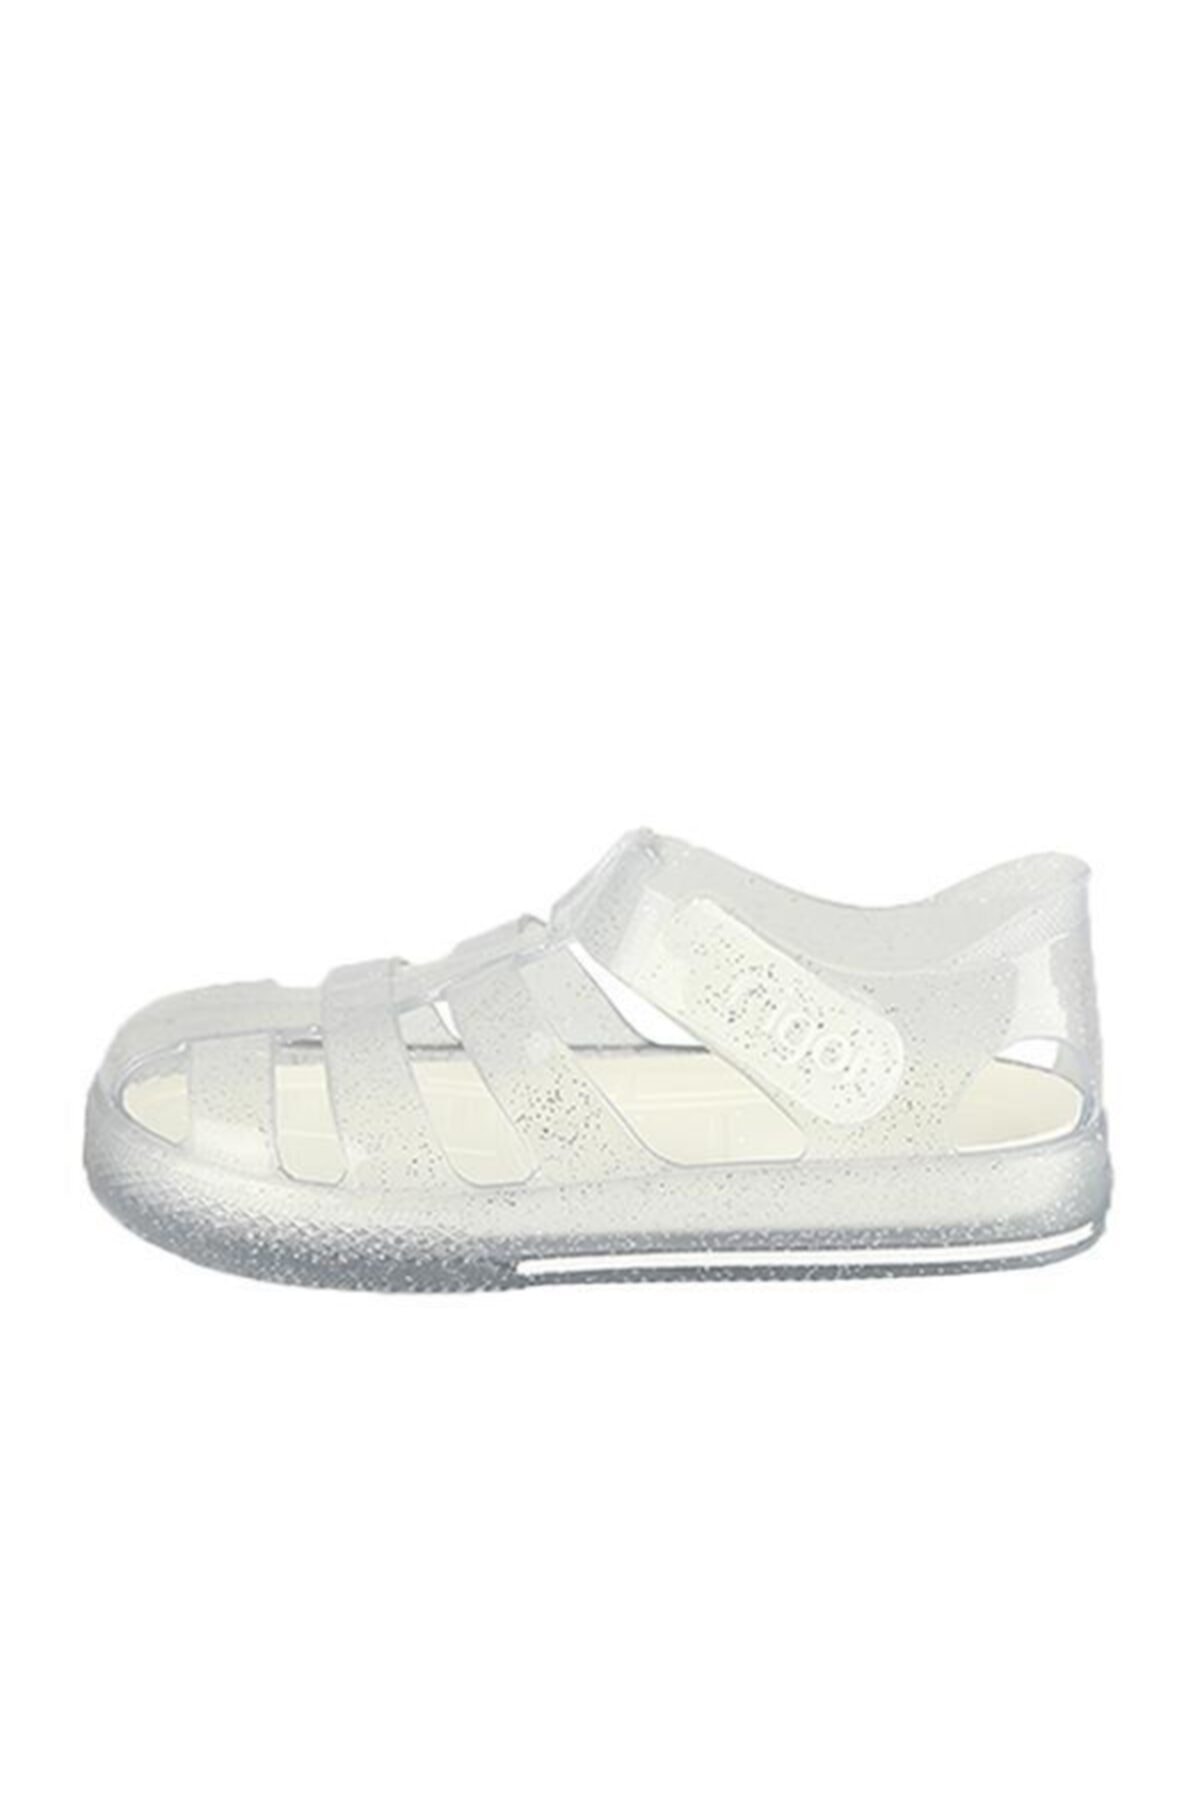 S10265 Star Glitter Çocuk Simli Beyaz Sandalet